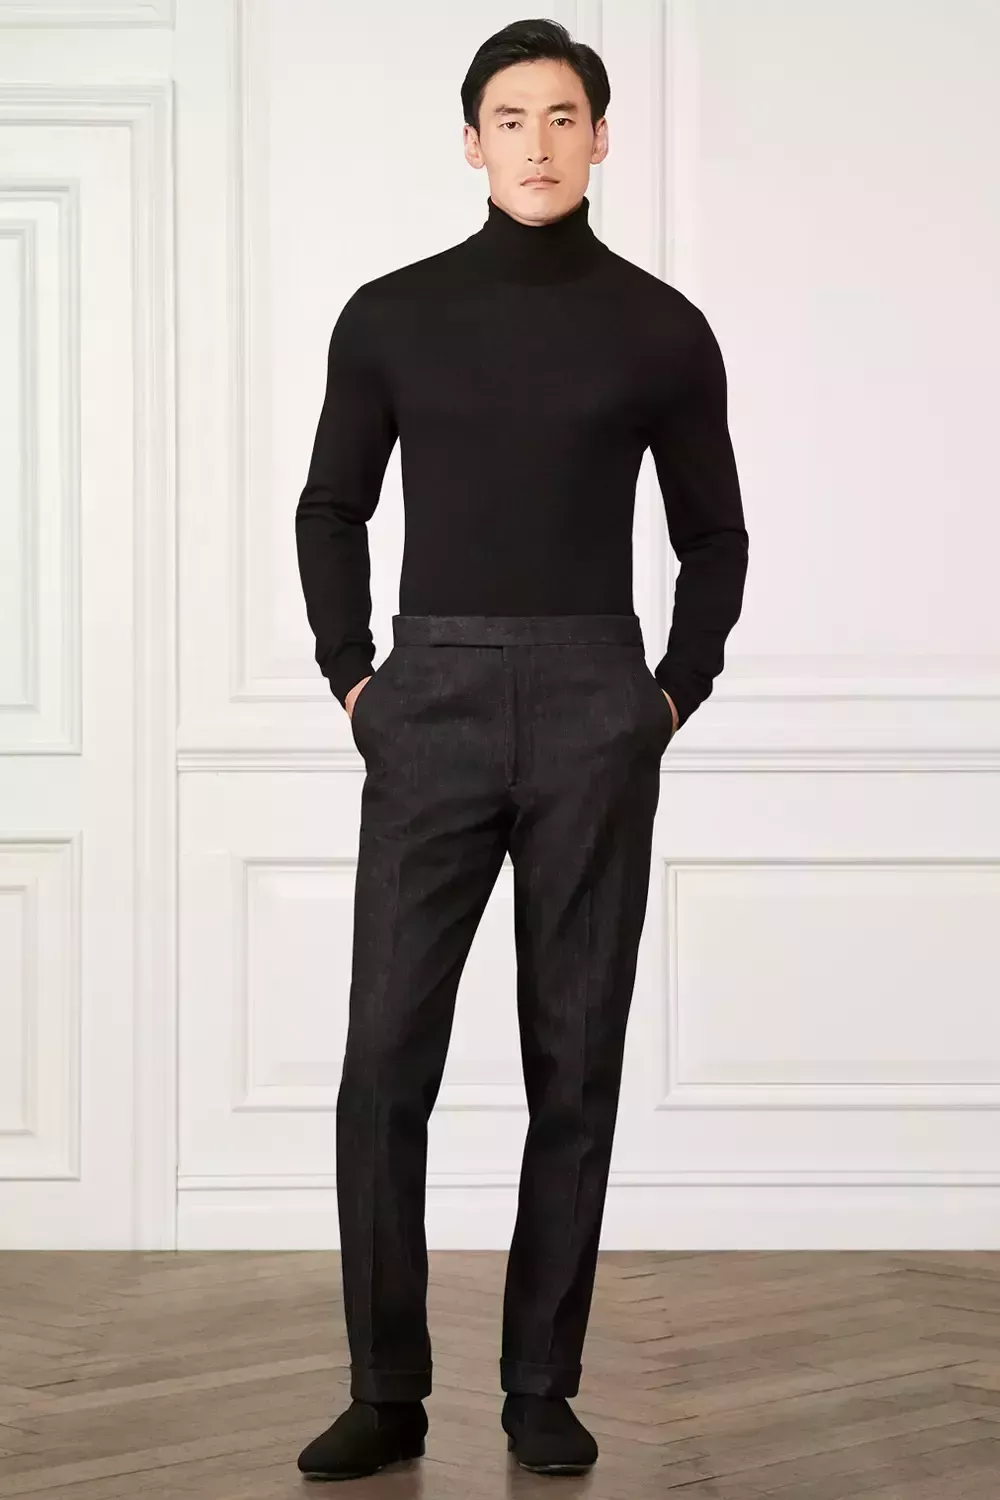 Cómo vestir de negro: 7 conjuntos atemporales y sofisticados